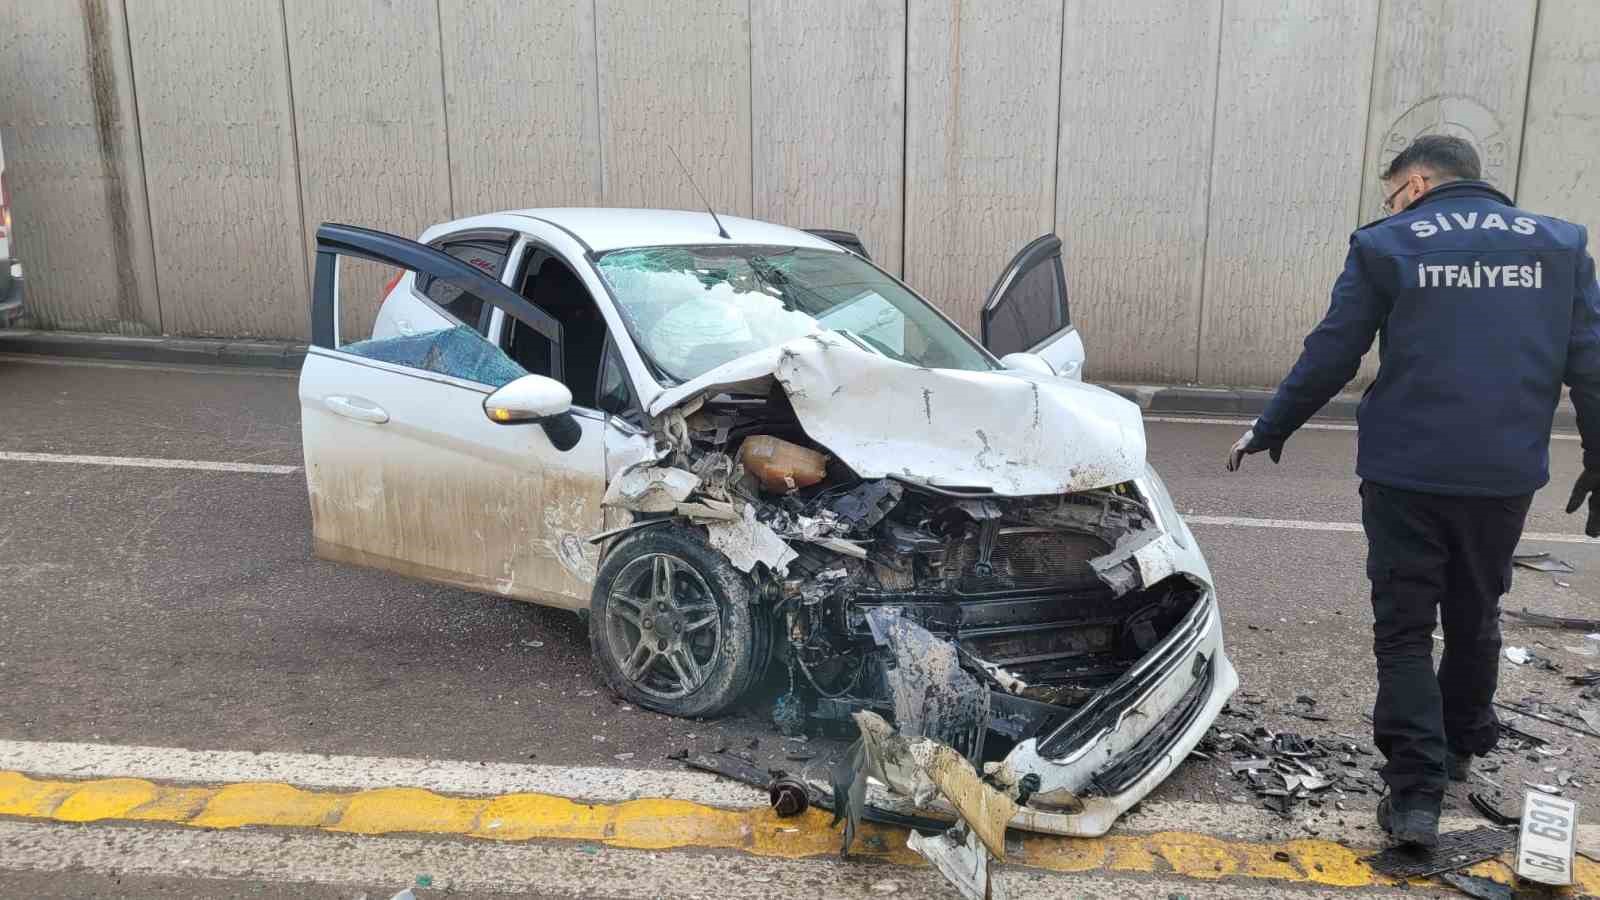 Sivas’ta kafa kafaya çarpışan otomobillerde 3 kişi yaralandı, 1’inin durumu ağır